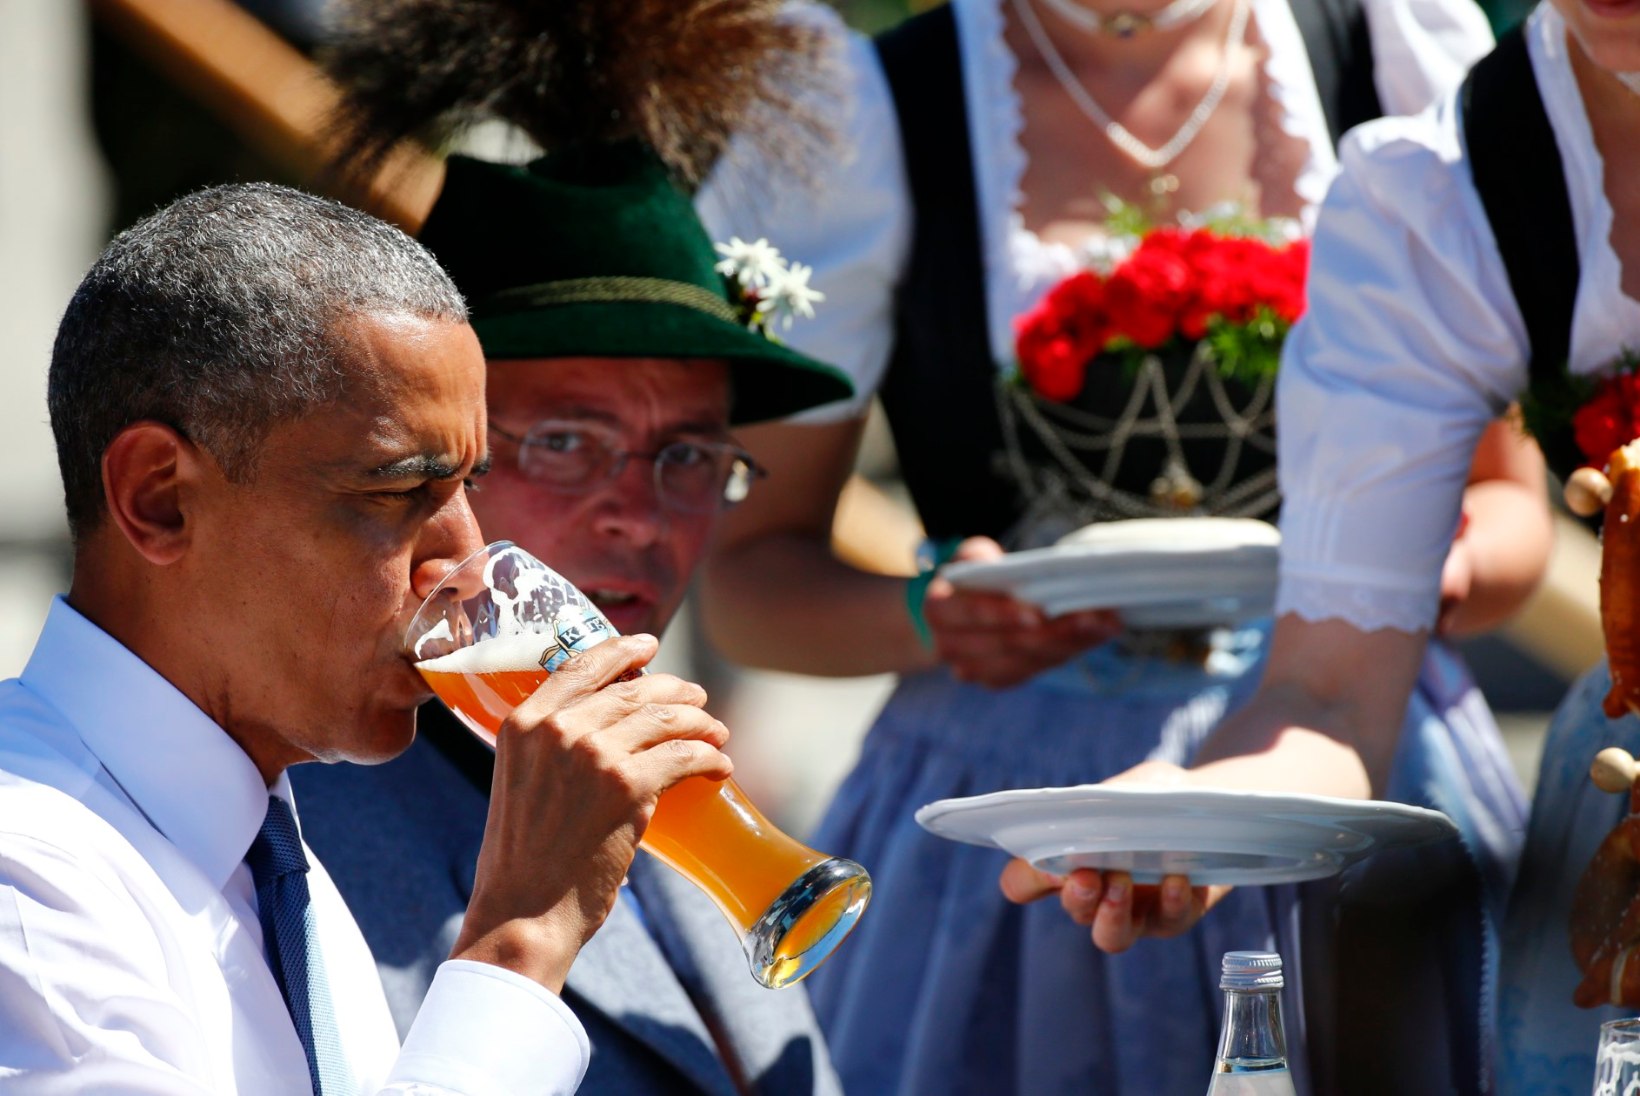 Millist Eesti õlut Merkelile pakkuda?